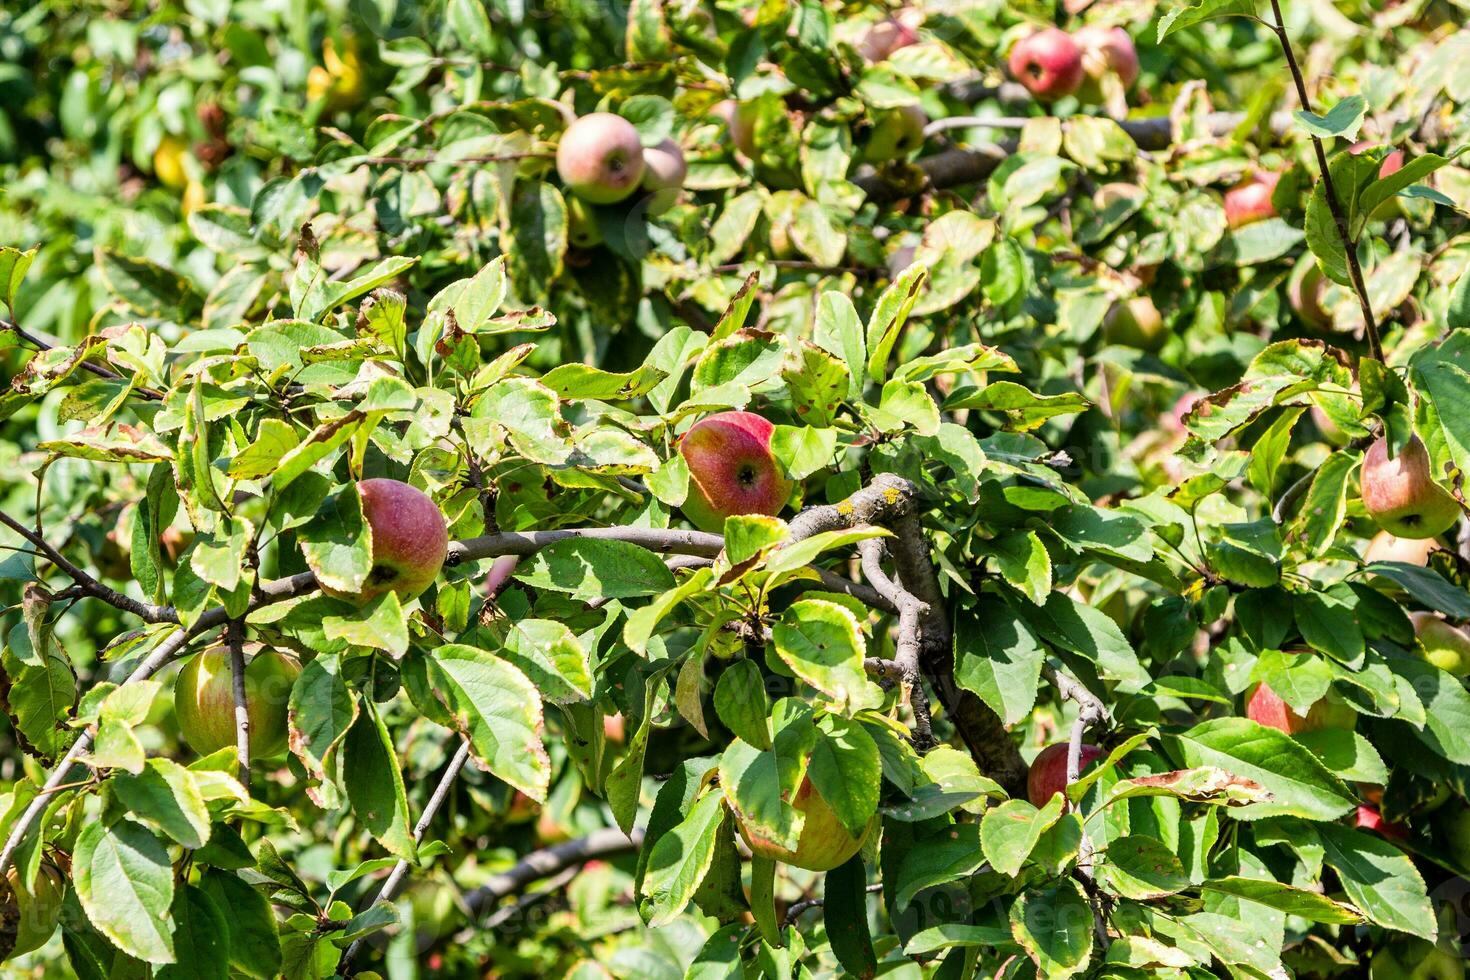 maduro Rosa maçãs entre verde folhas do maçã árvore foto